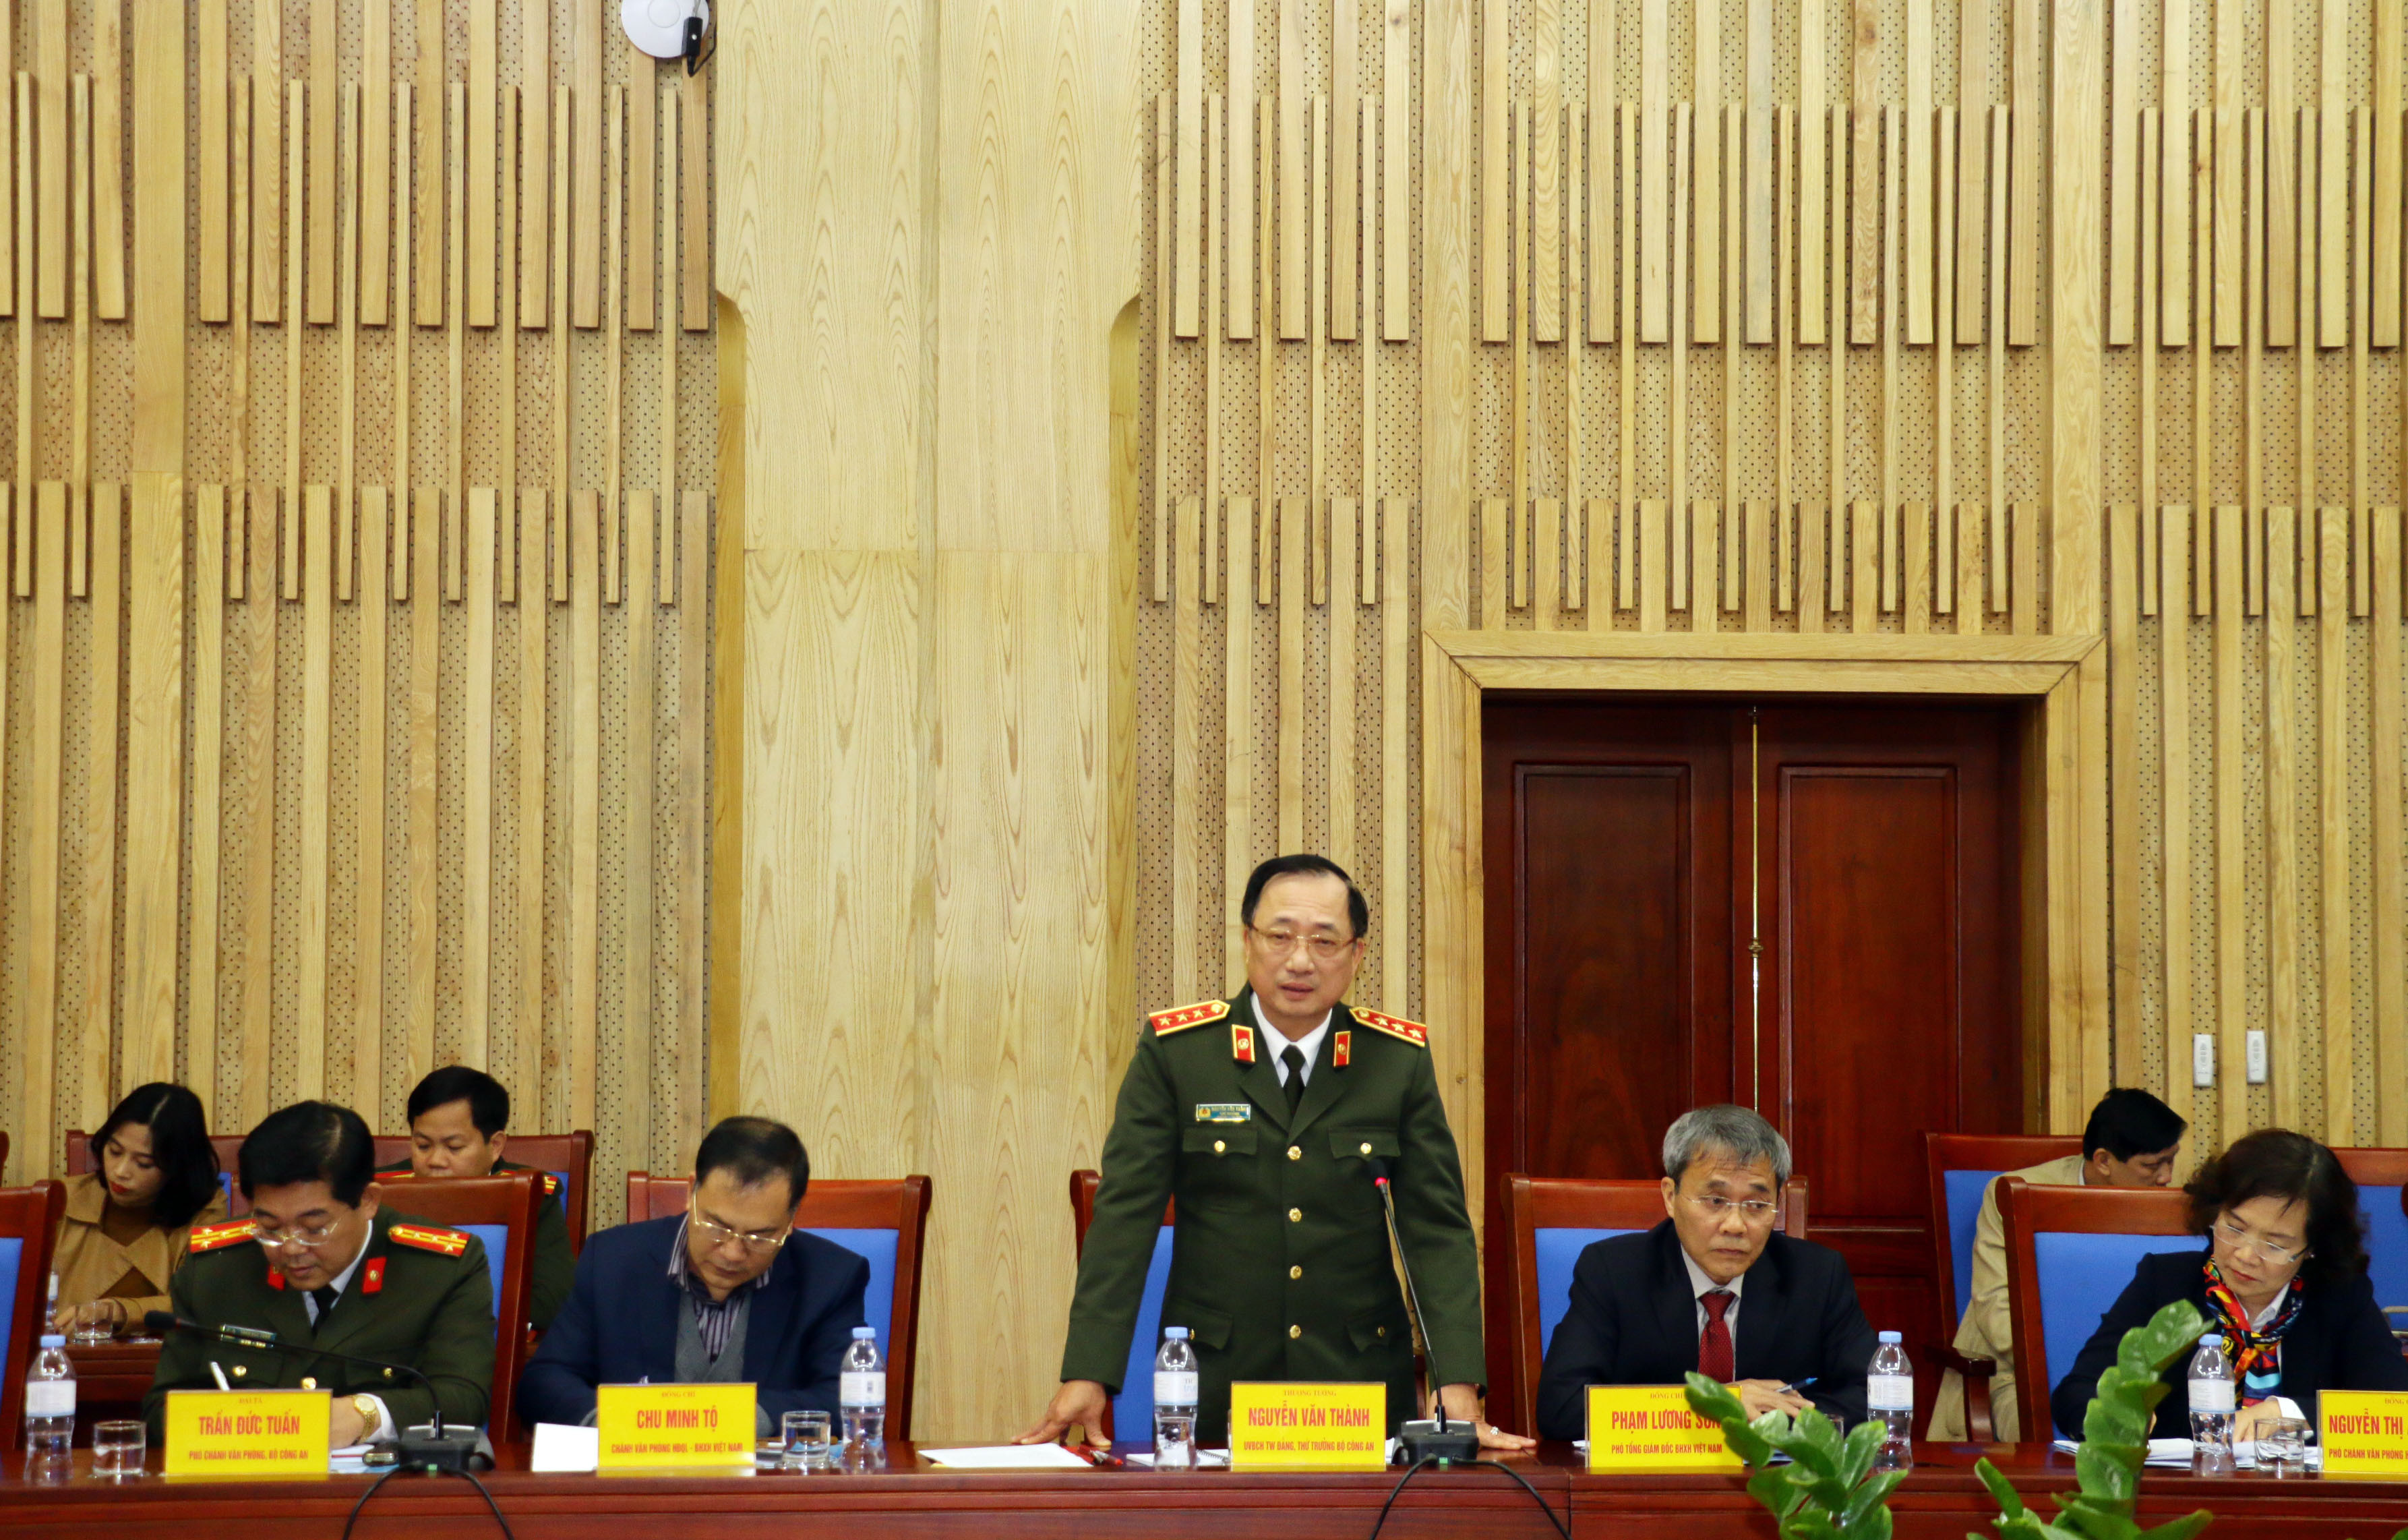 Đồng chí Thứ trưởng Bộ Công an phát biểu về công tác thực hiện chính sách BHXH, BHYT của tỉnh Nghệ An. Ảnh: Mỹ Hà